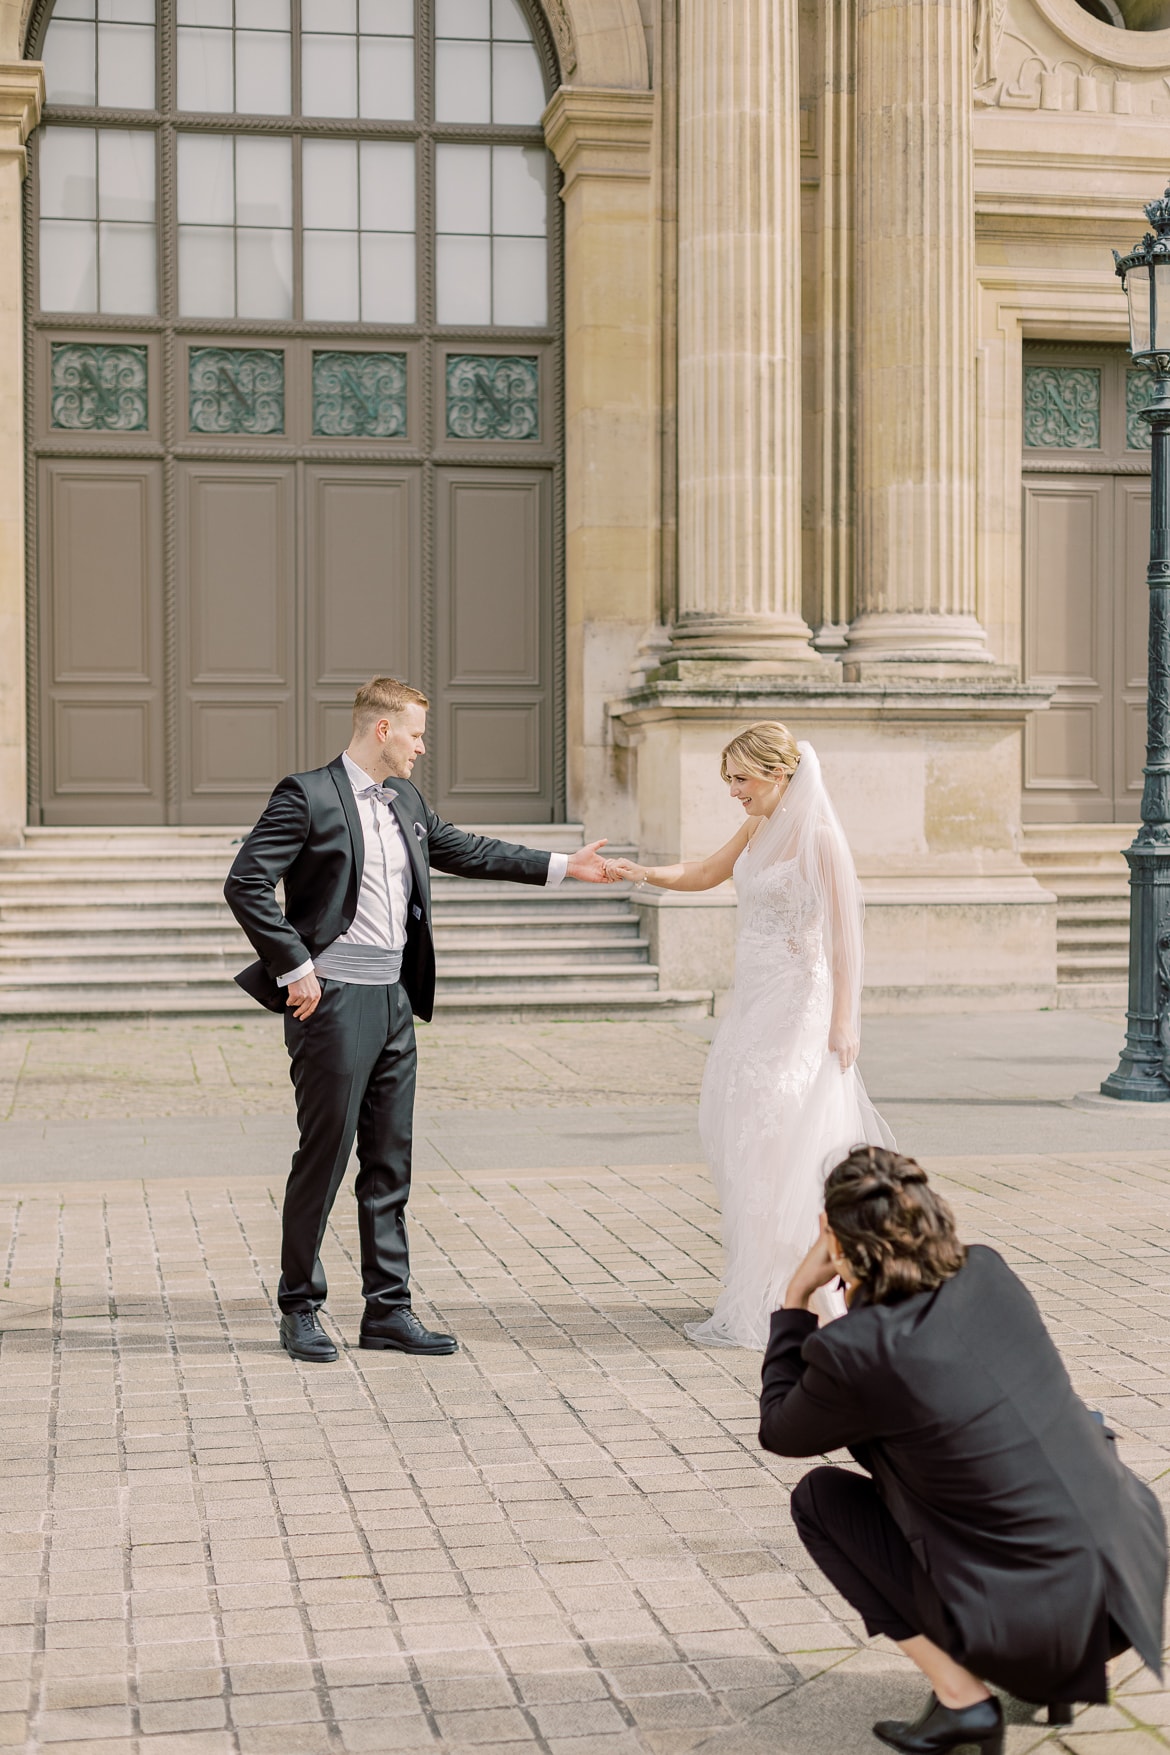 Fotografin hockt auf dem Boden und fotografiert von dort ein Hochzeitspaar